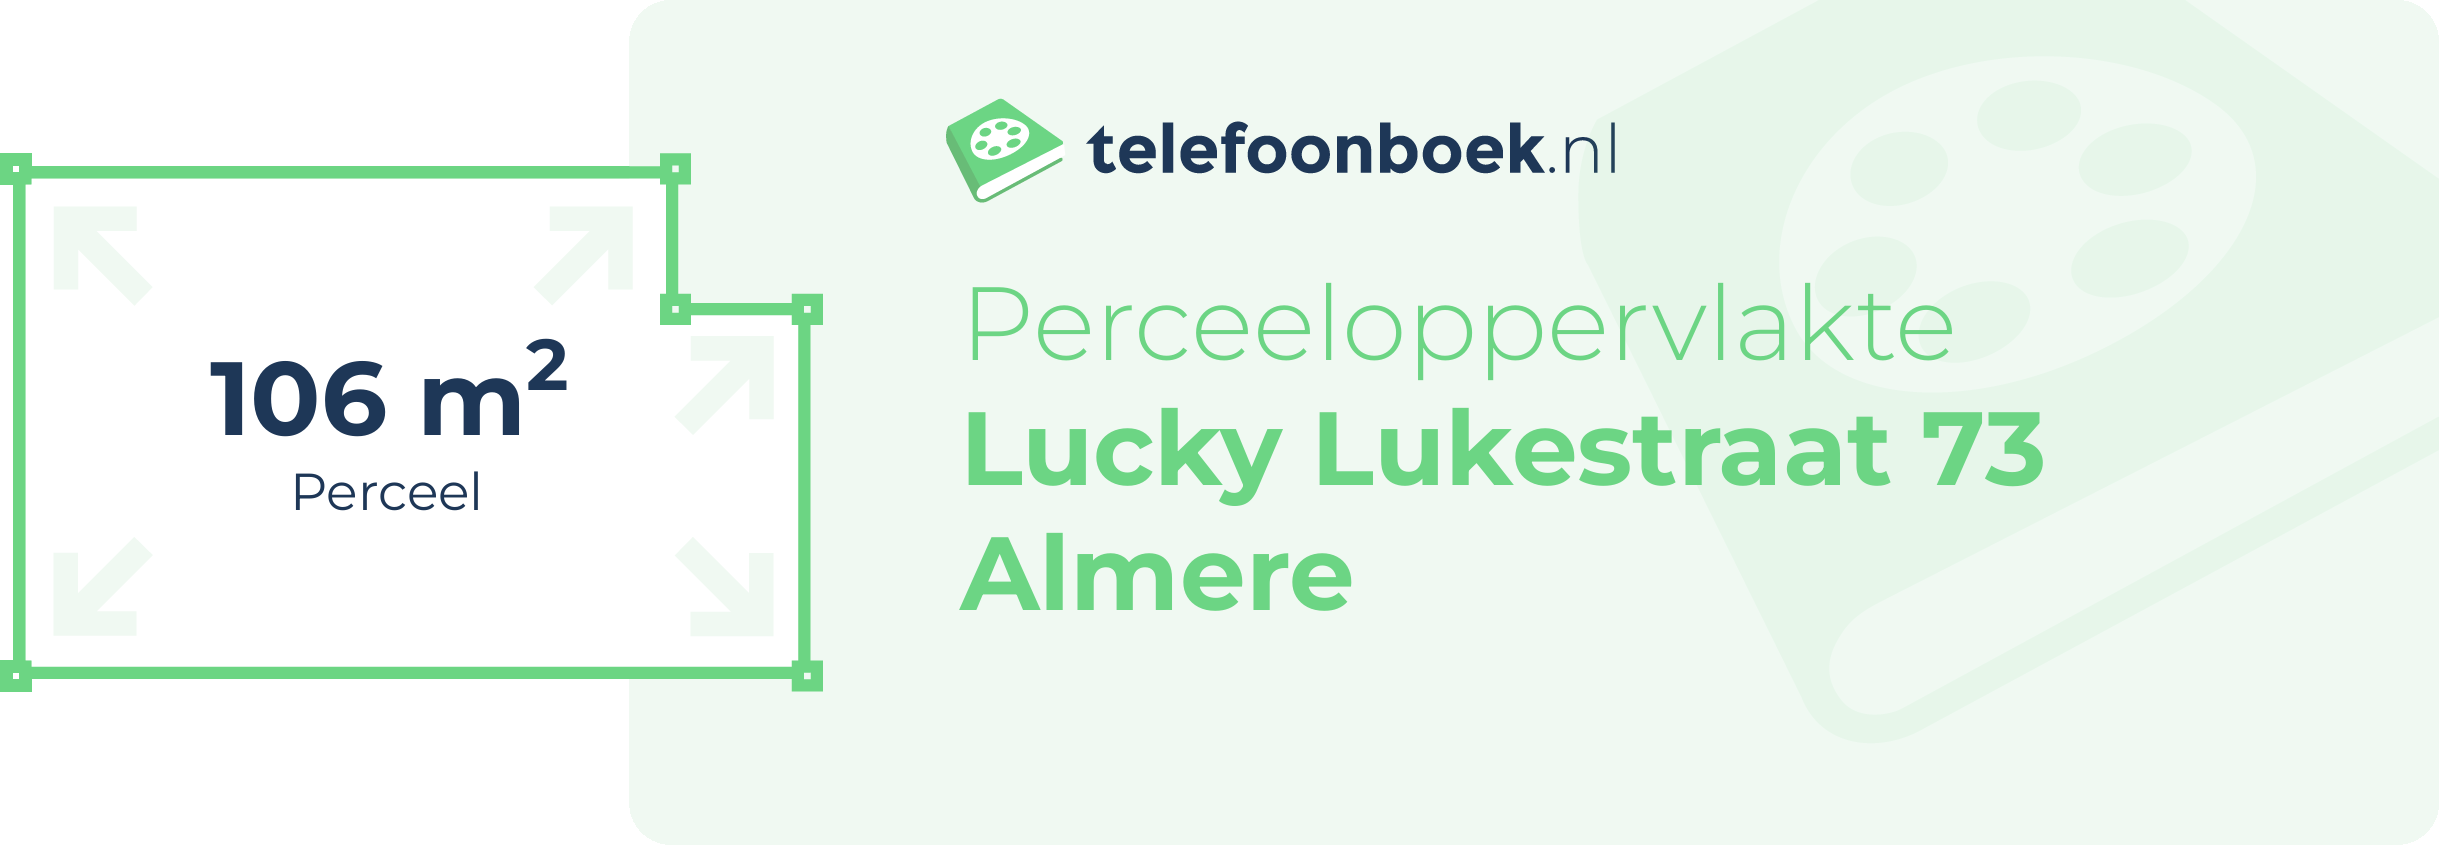 Perceeloppervlakte Lucky Lukestraat 73 Almere